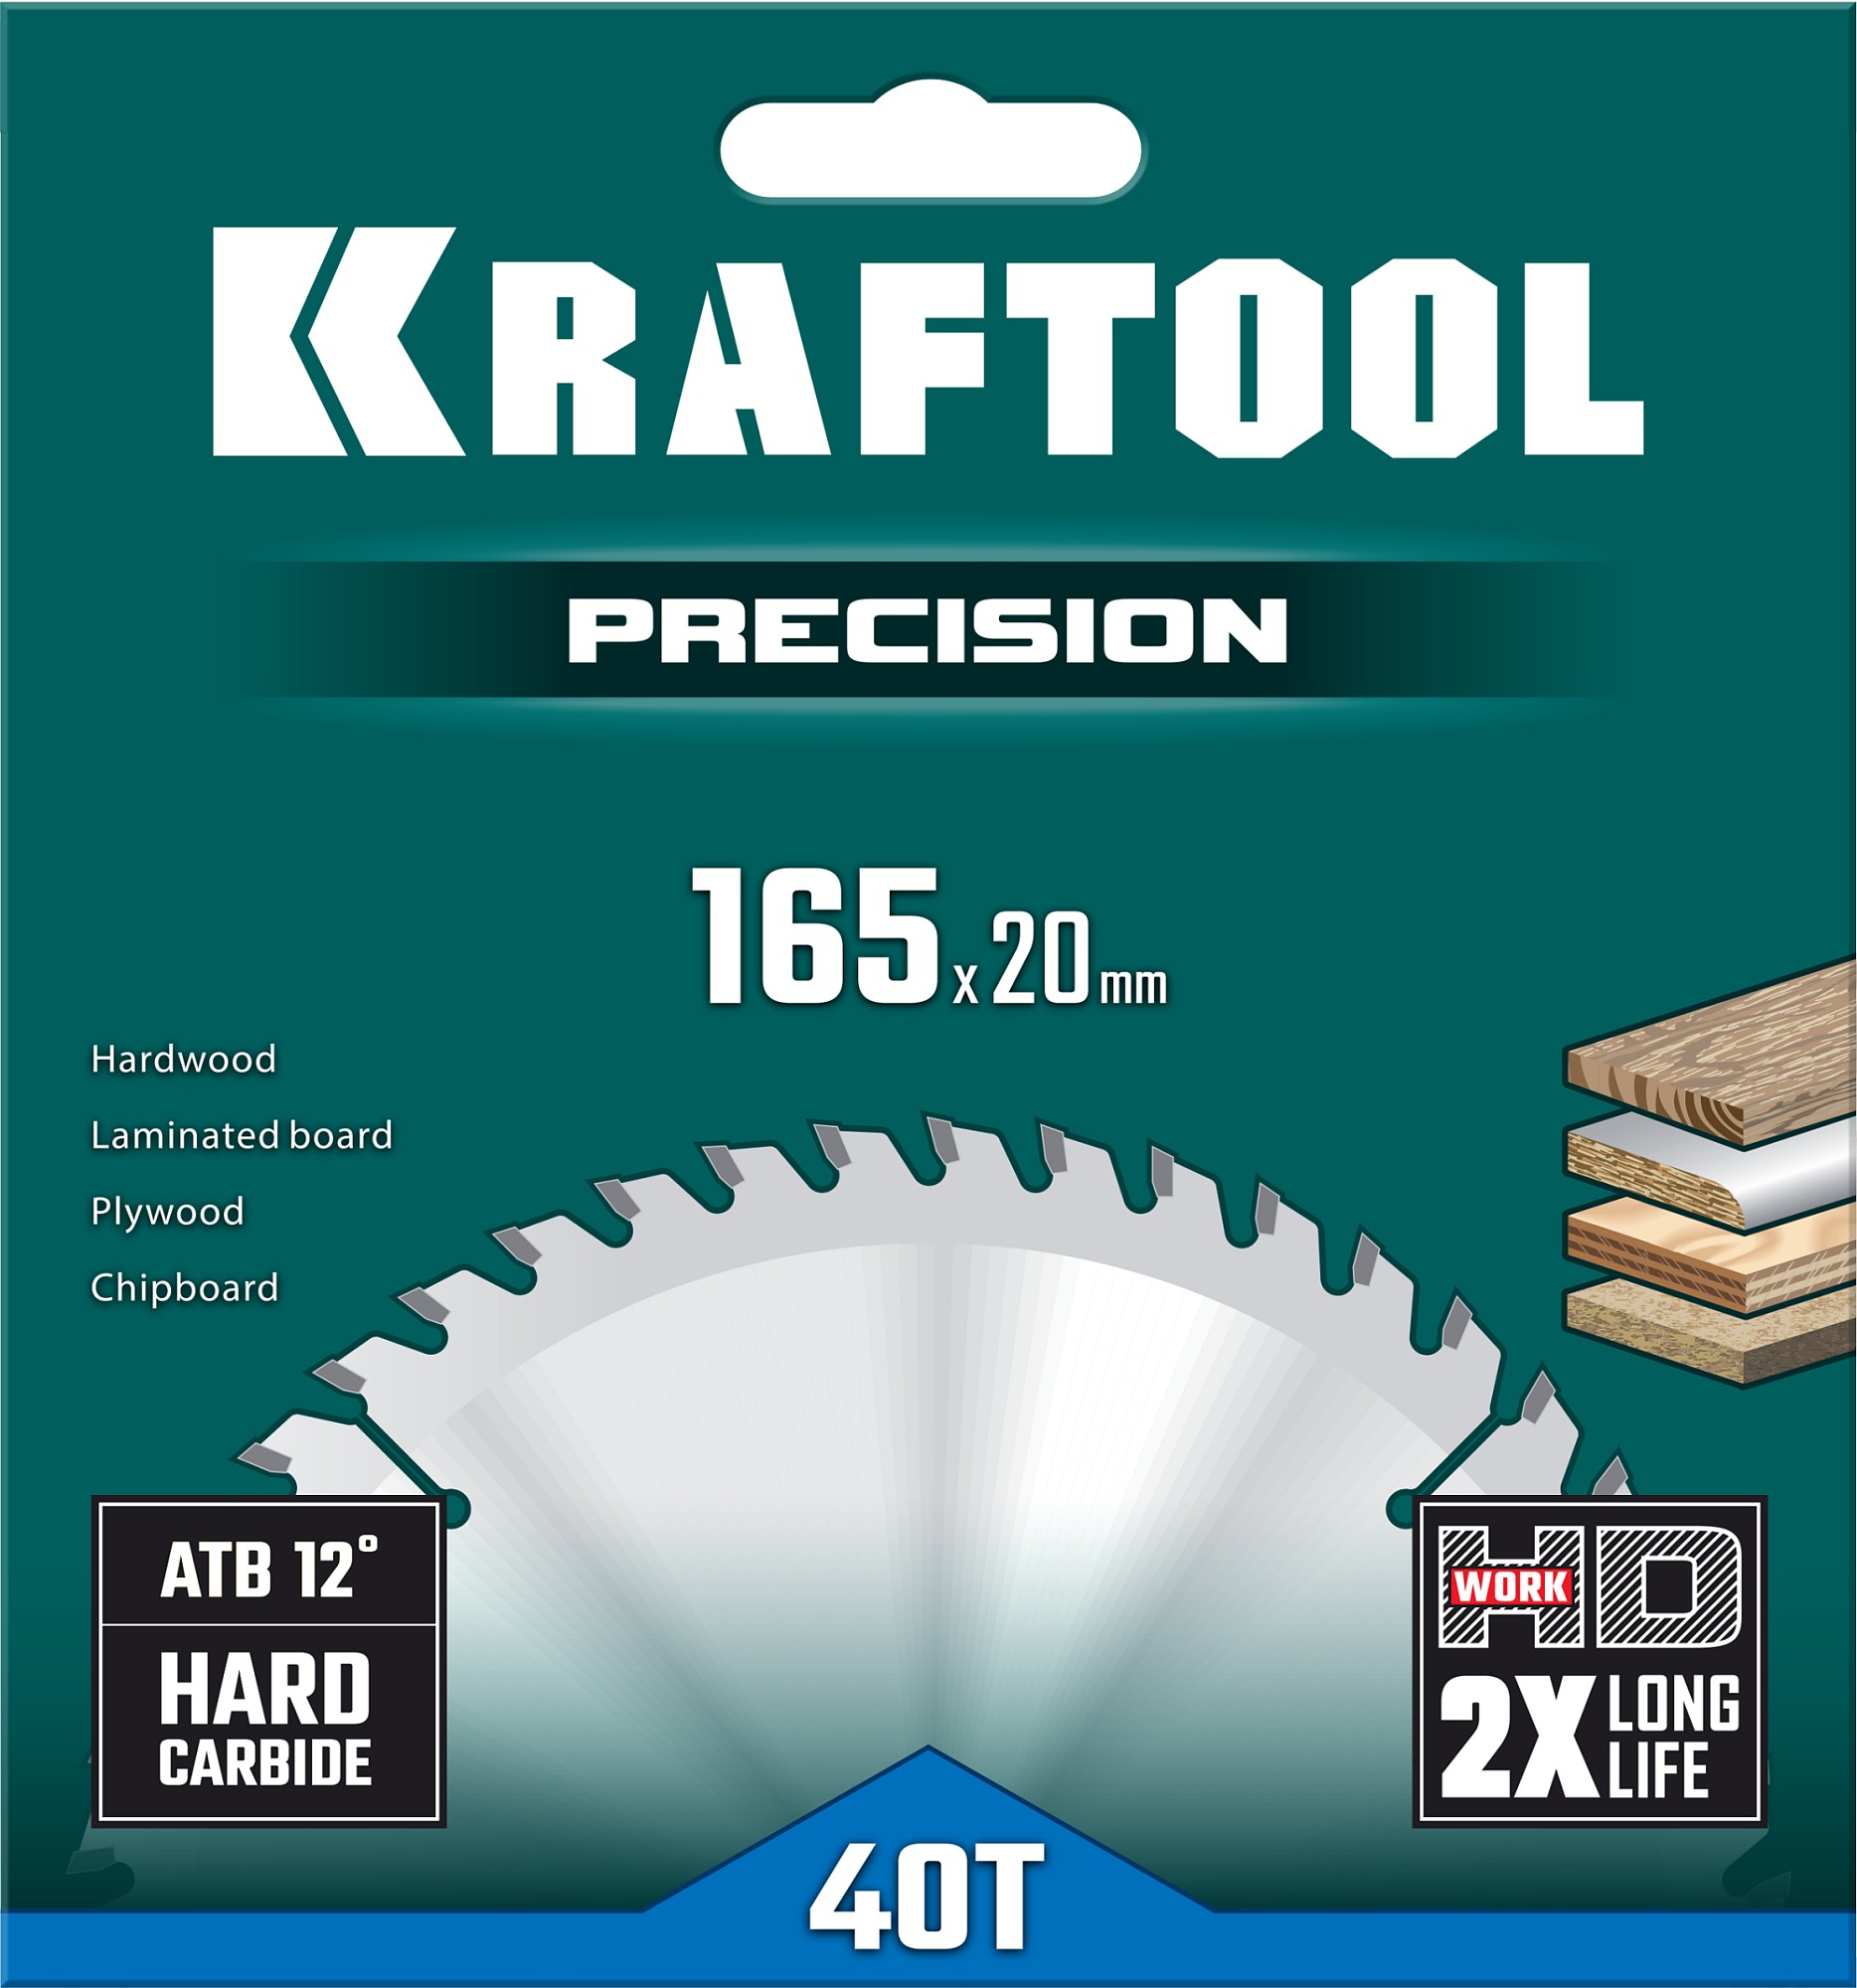 KRAFTOOL Precision, 165 х 20 мм, 40Т, пильный диск по дереву (36952-165-20)